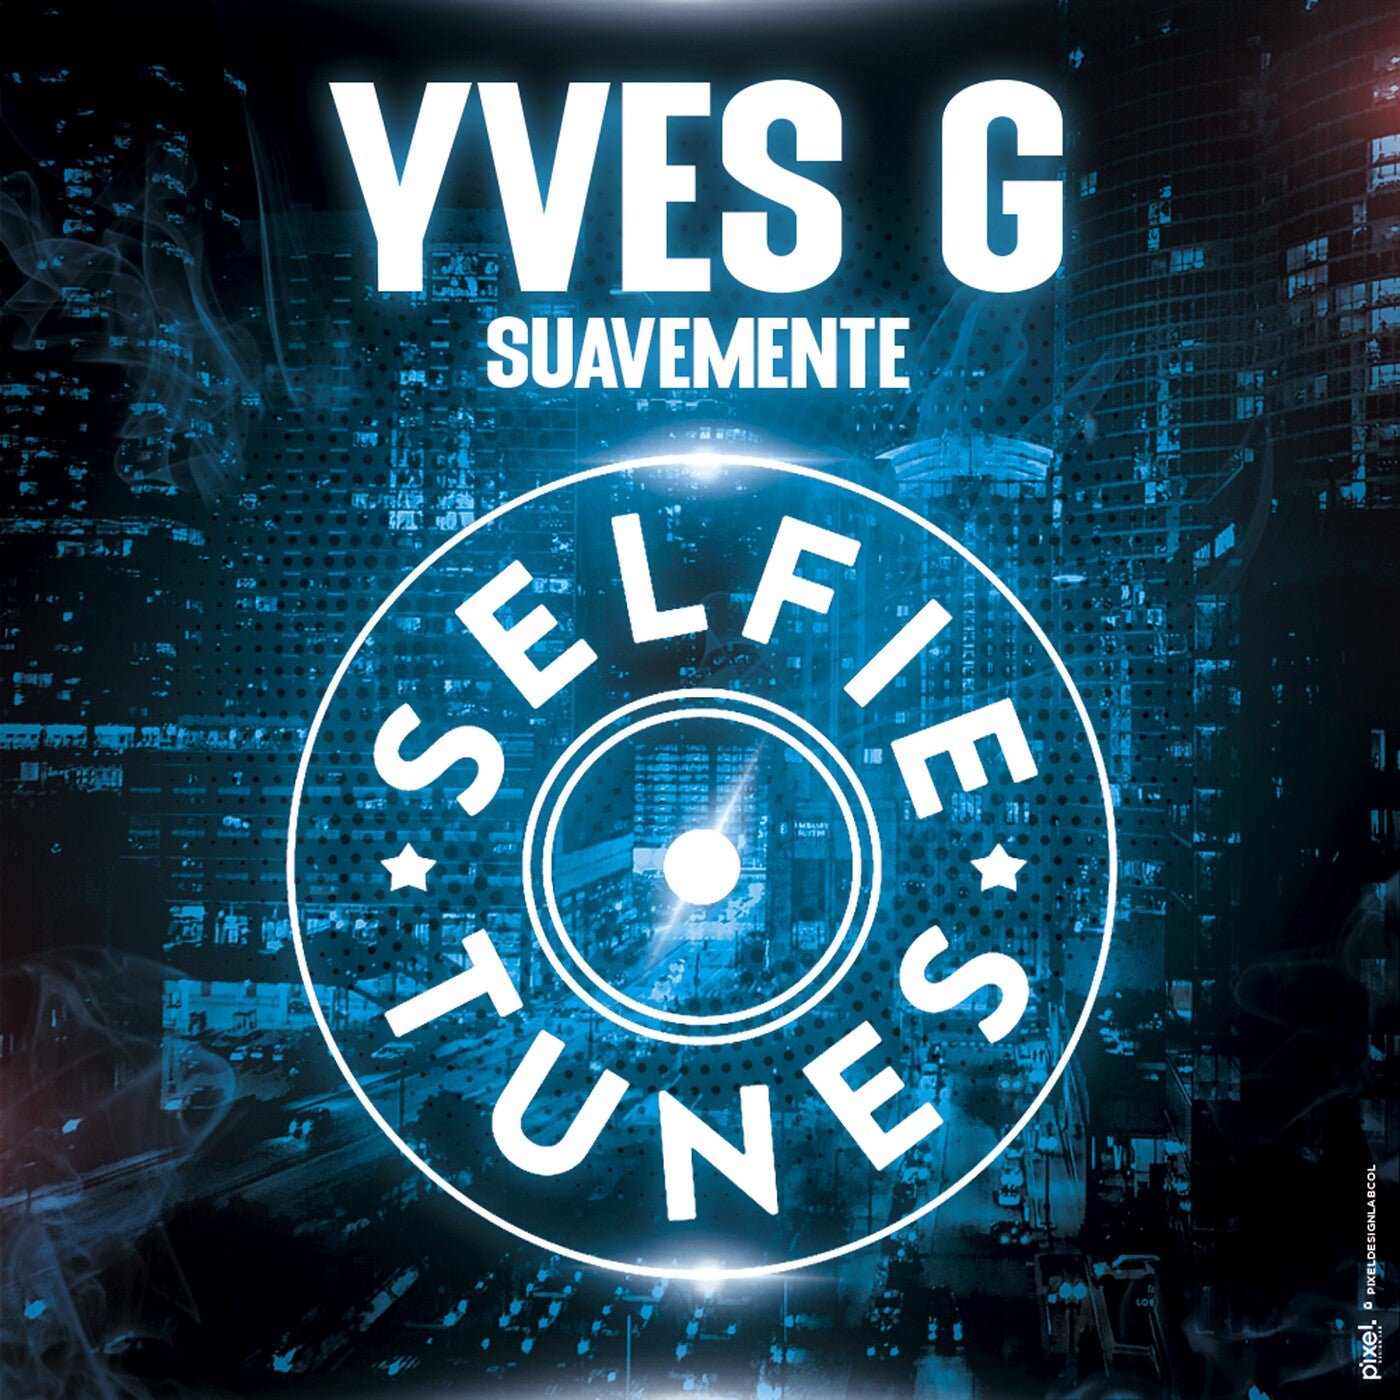 Yves G Music & Downloads on Beatport